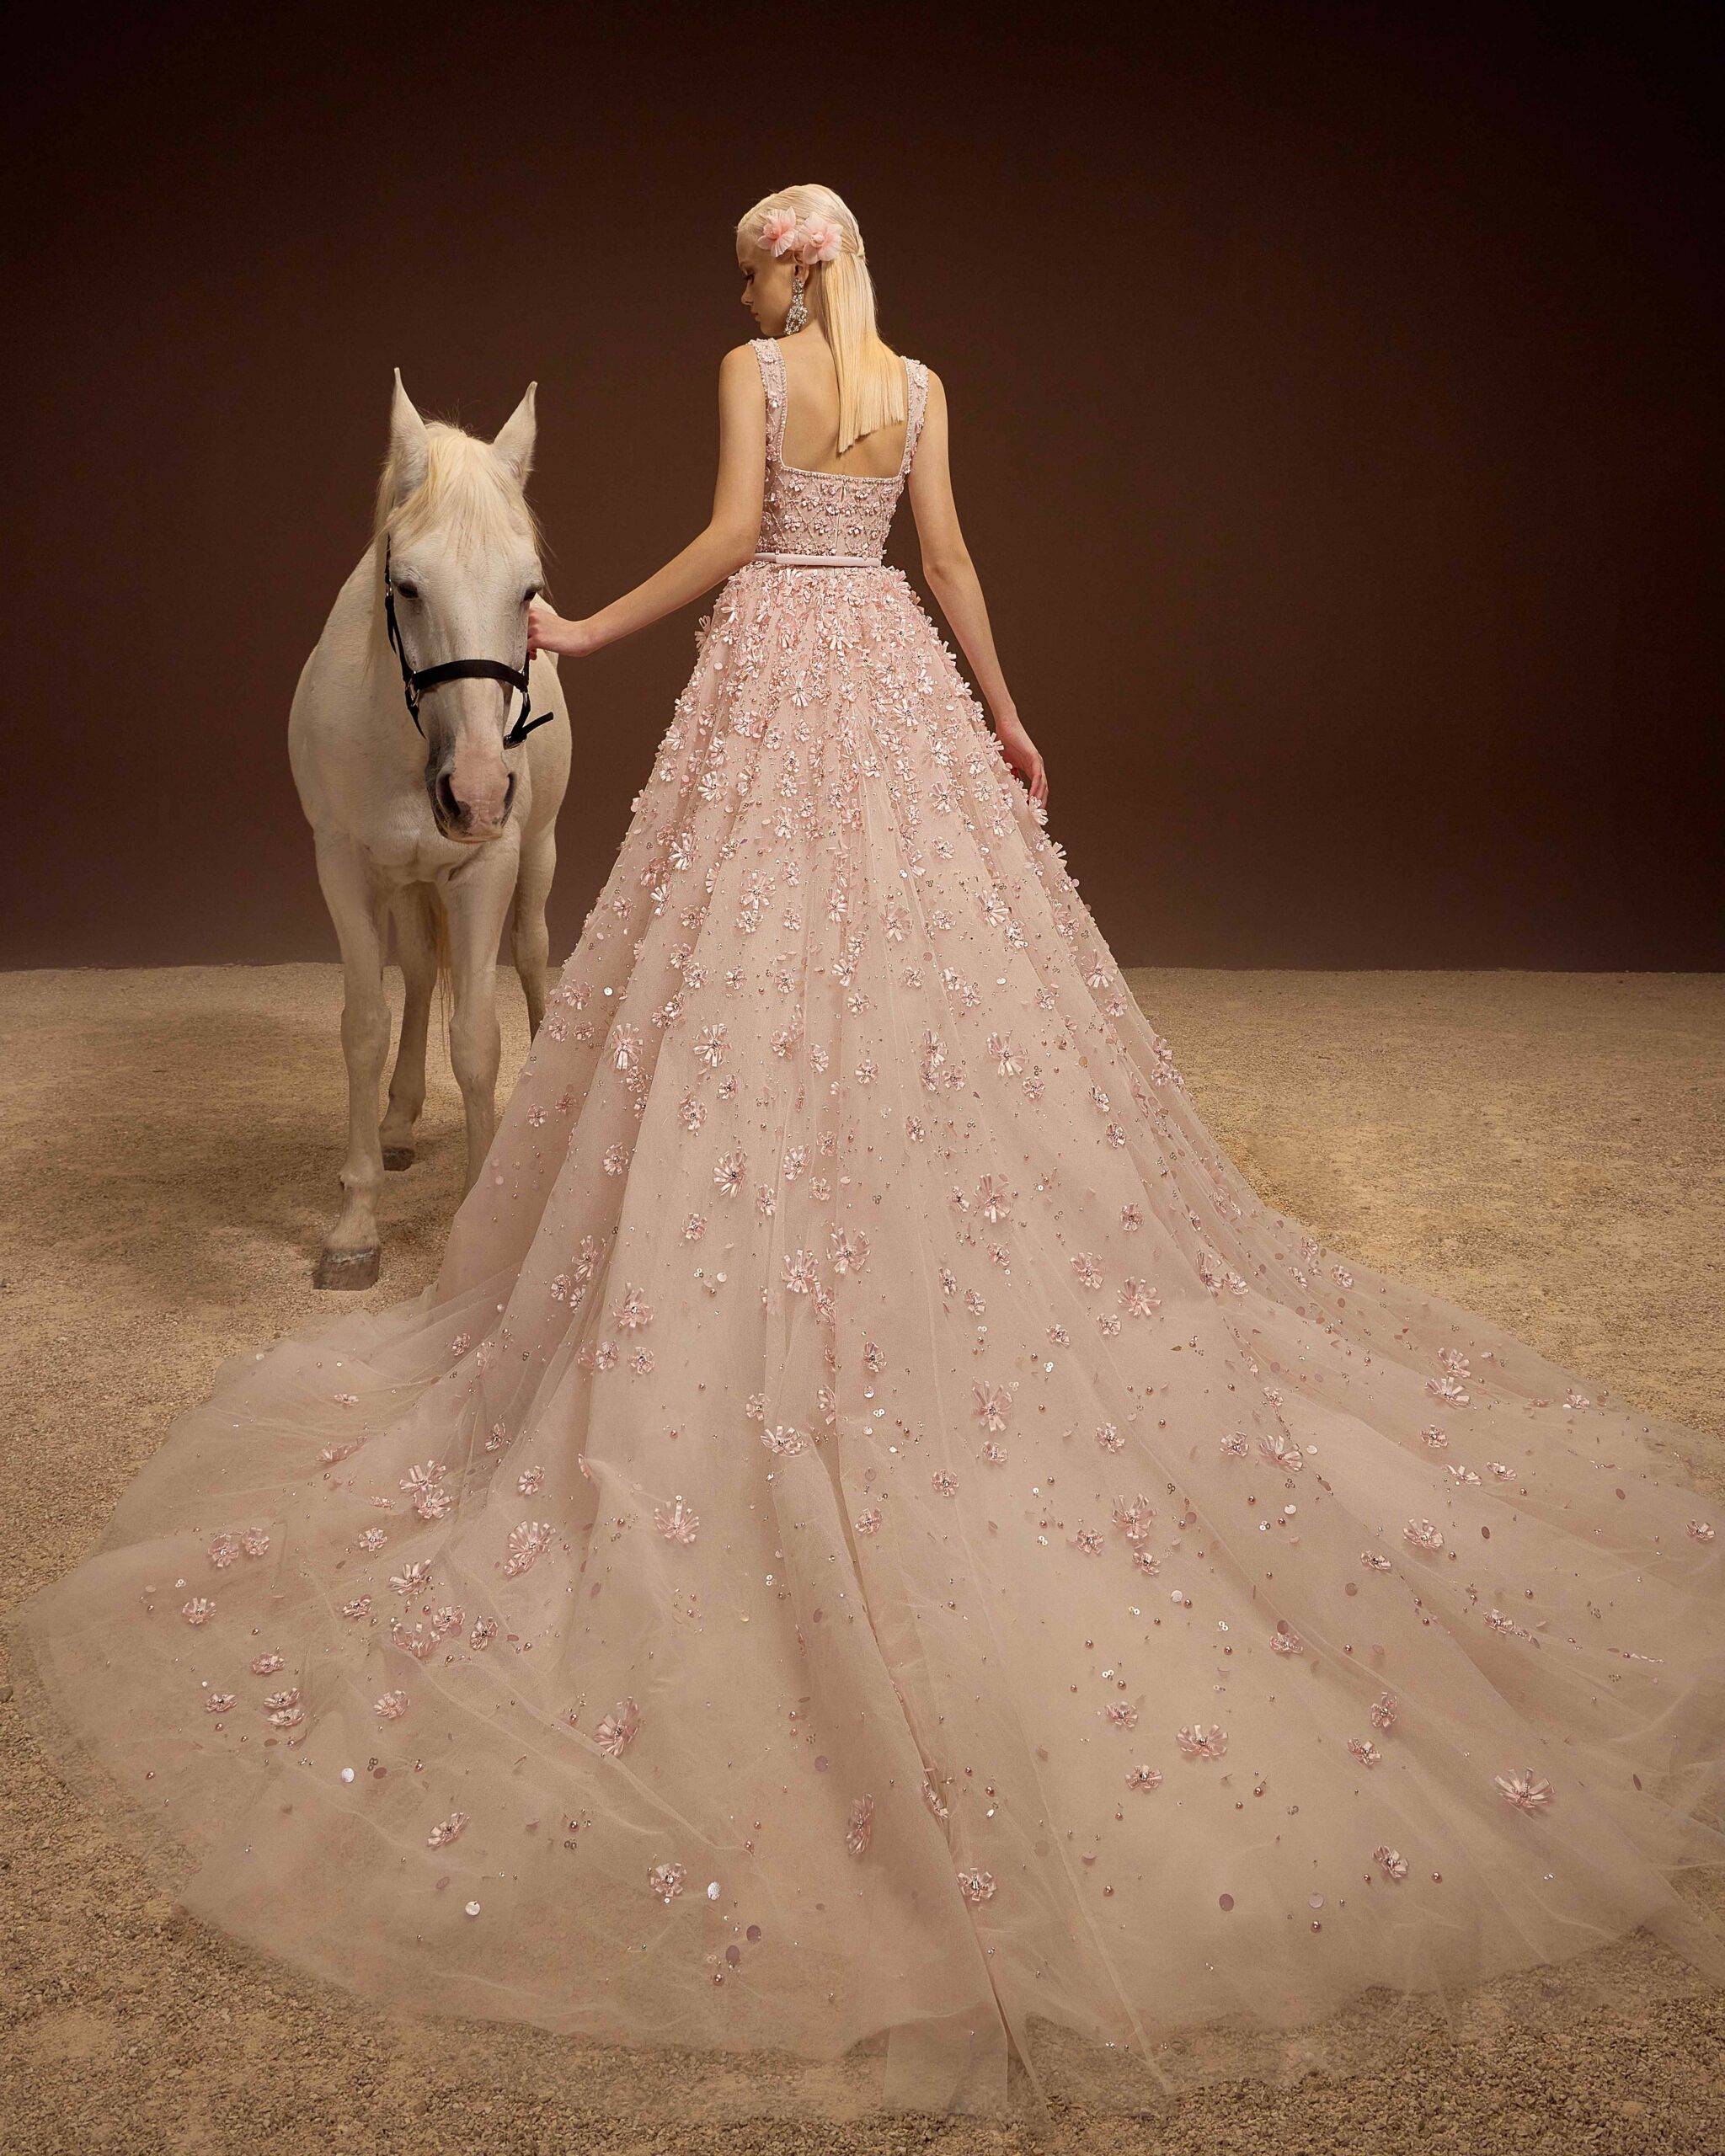 黎巴嫩三大婚纱品牌图片